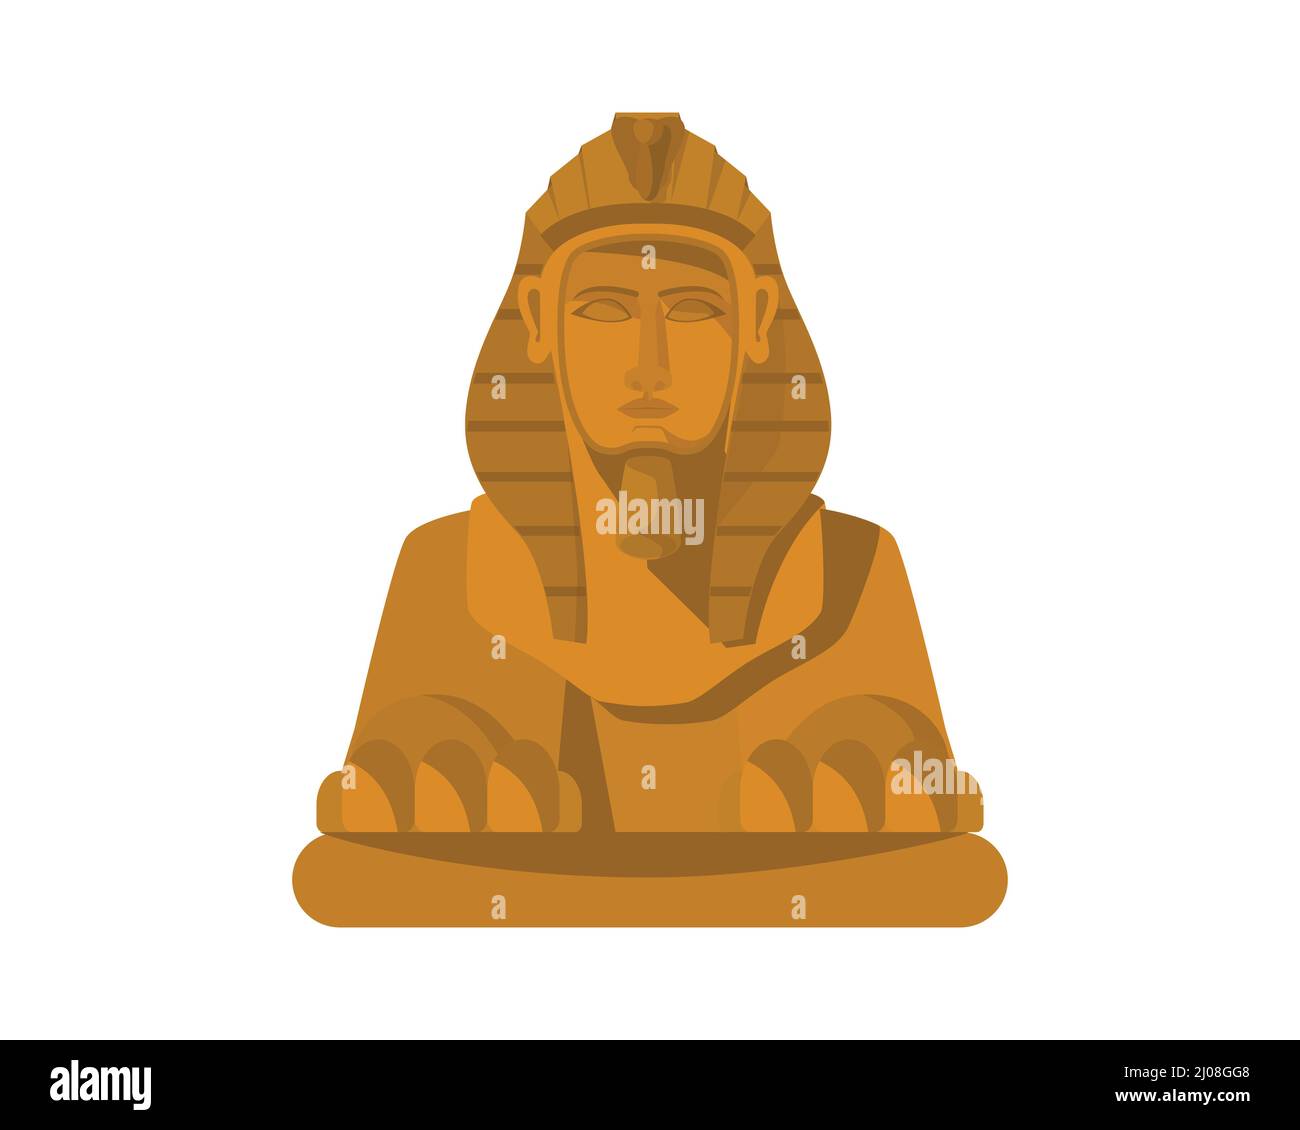 Sphinx the Egypt's Landmark Illustration Stock Vector